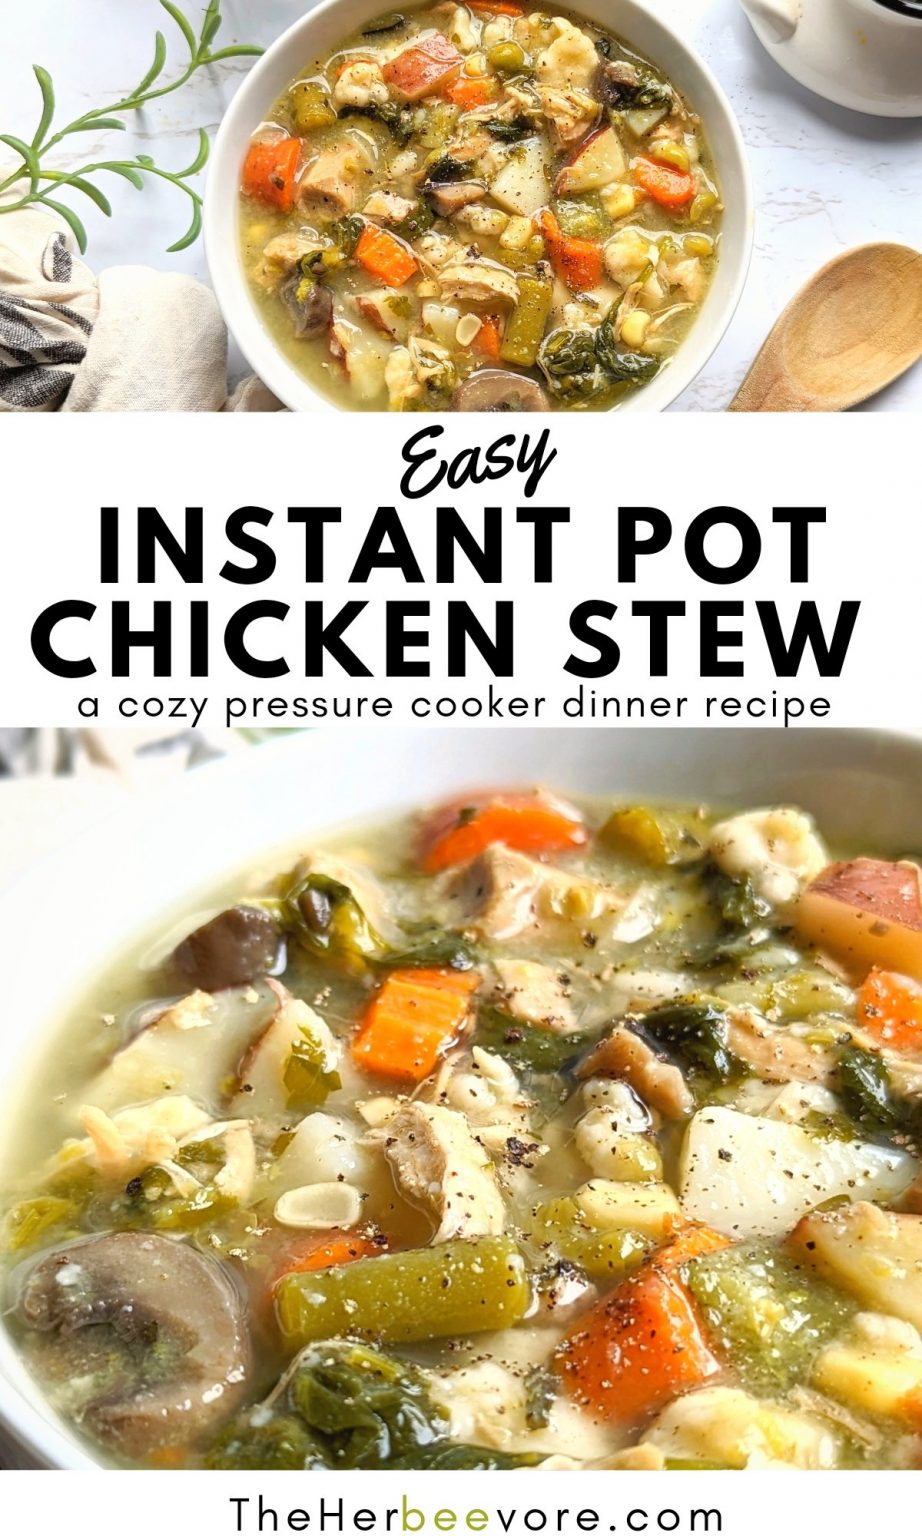 Cozy Instant Pot Chicken Stew Recipe (Dairy & Gluten Free)